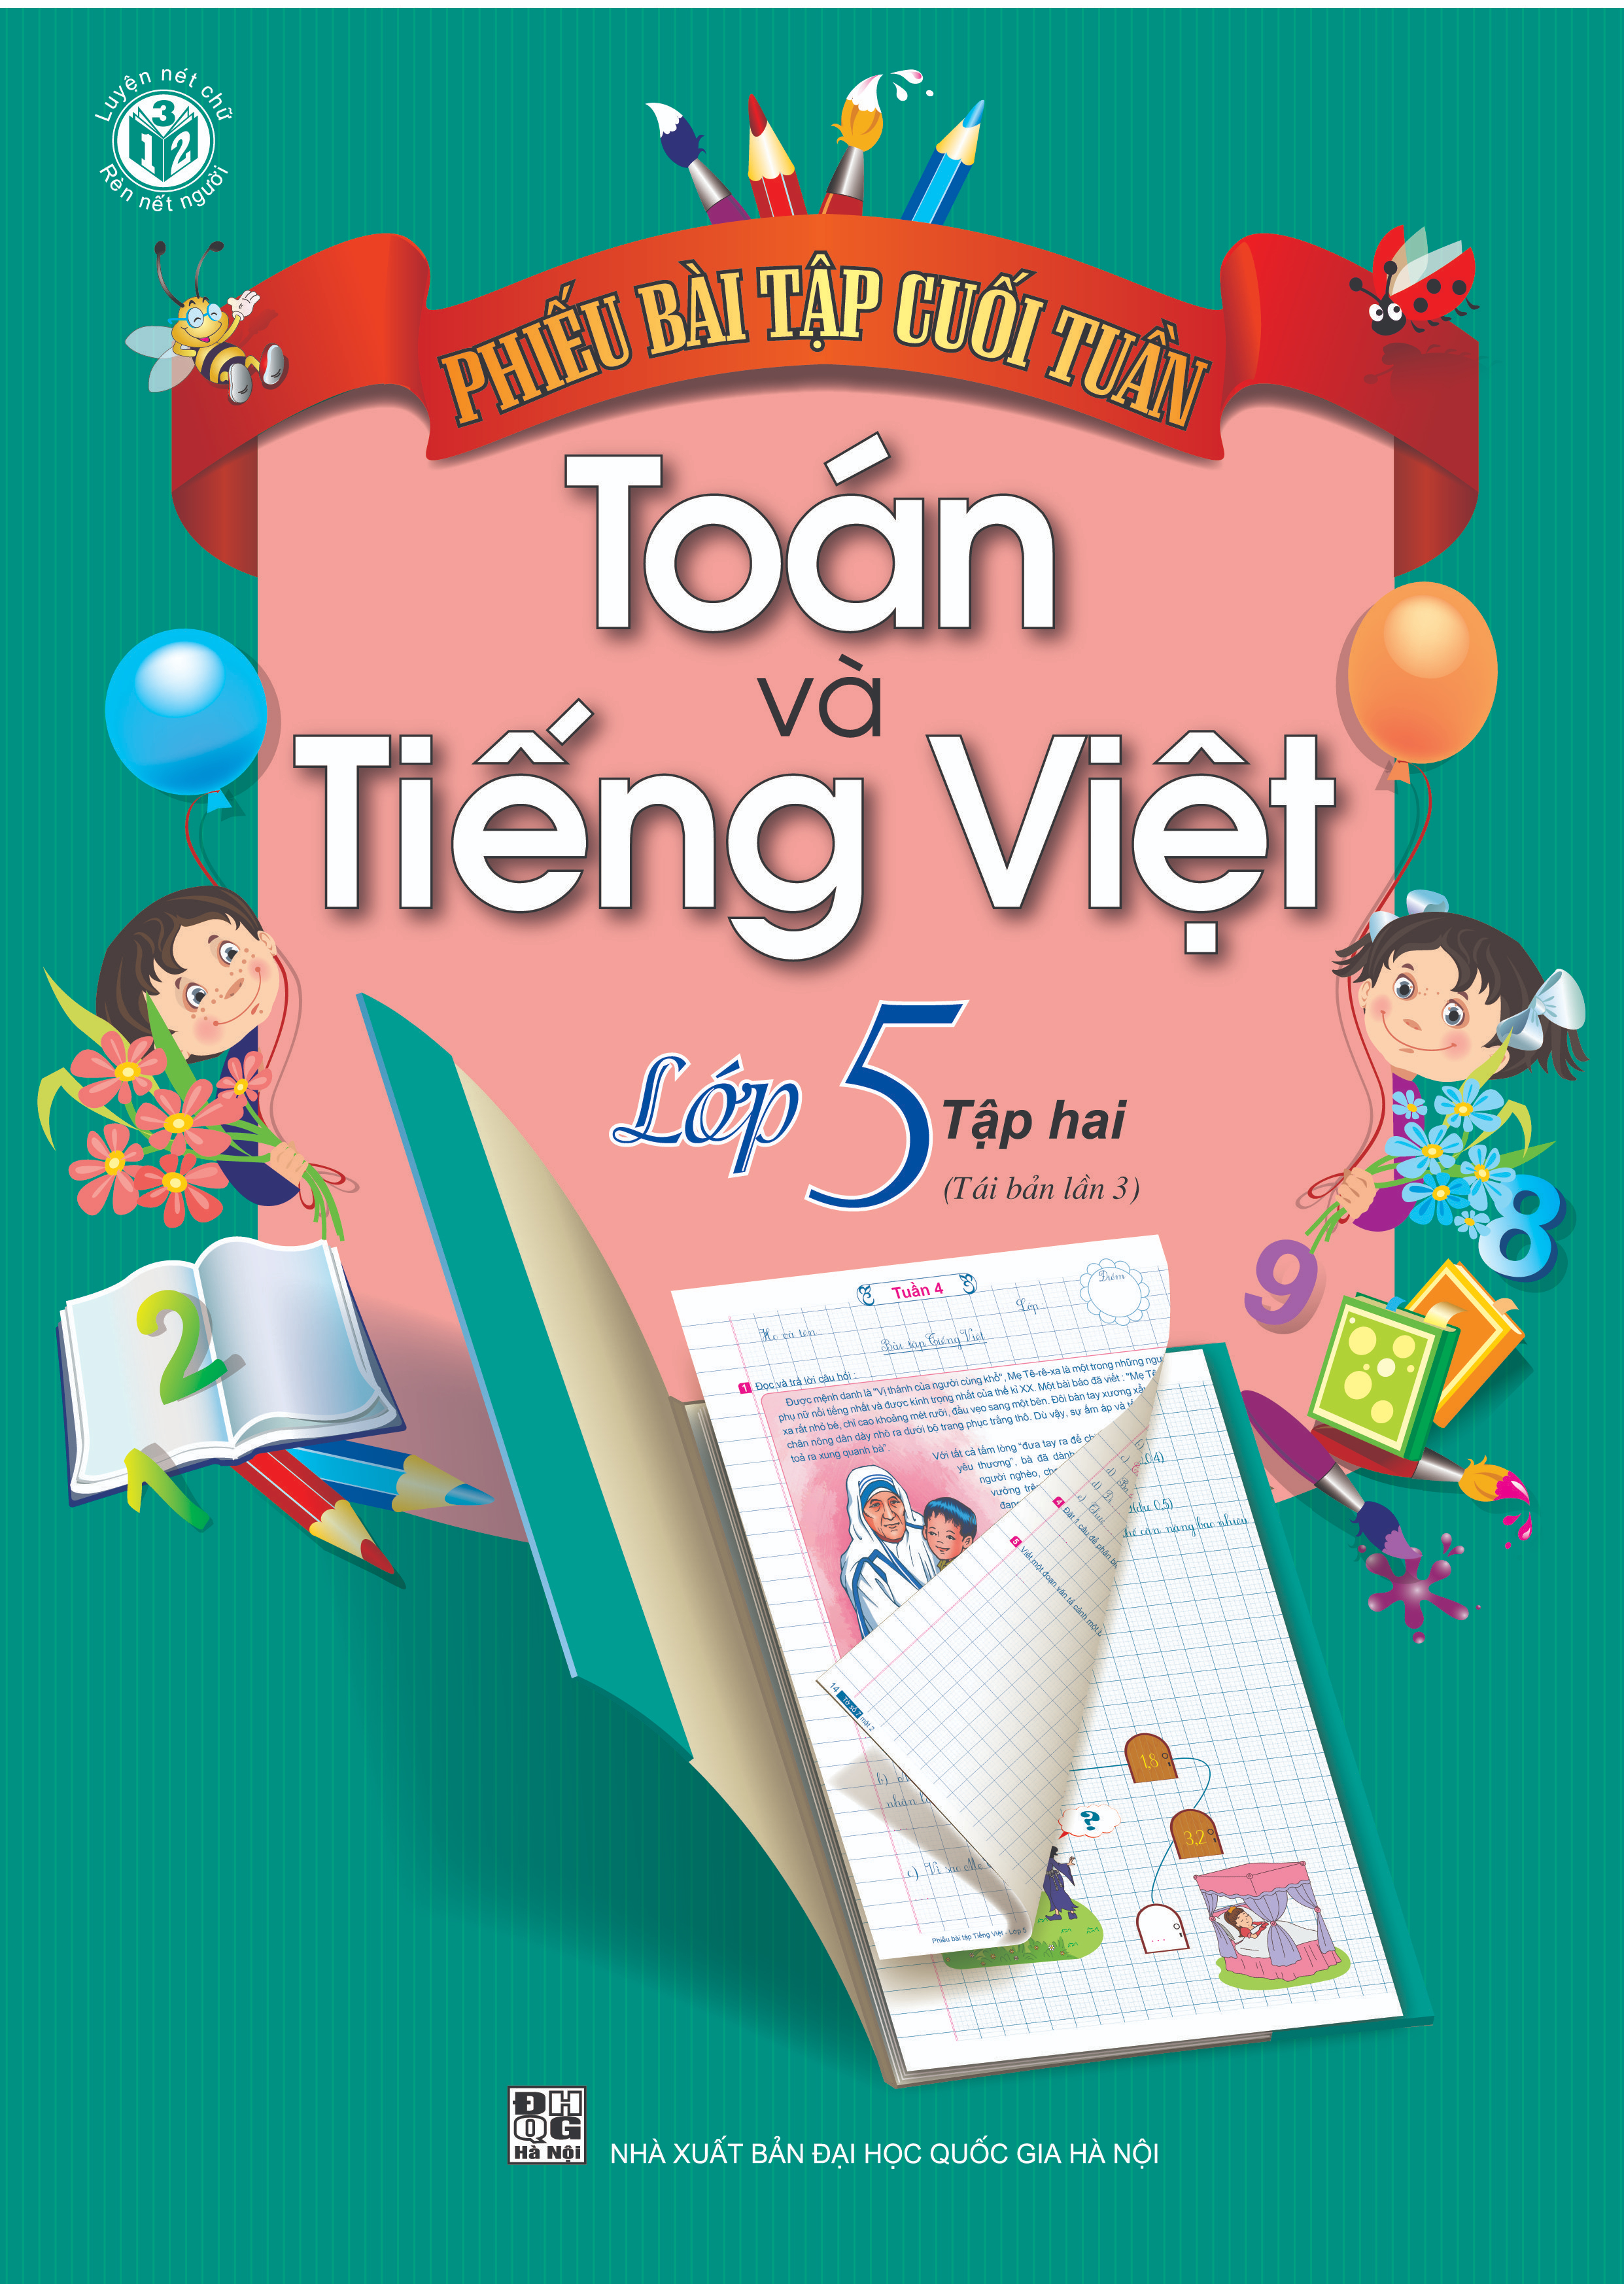 Phiếu bài tập Cuối tuần Toán và Tiếng Việt Lớp 5 - Quyển 2